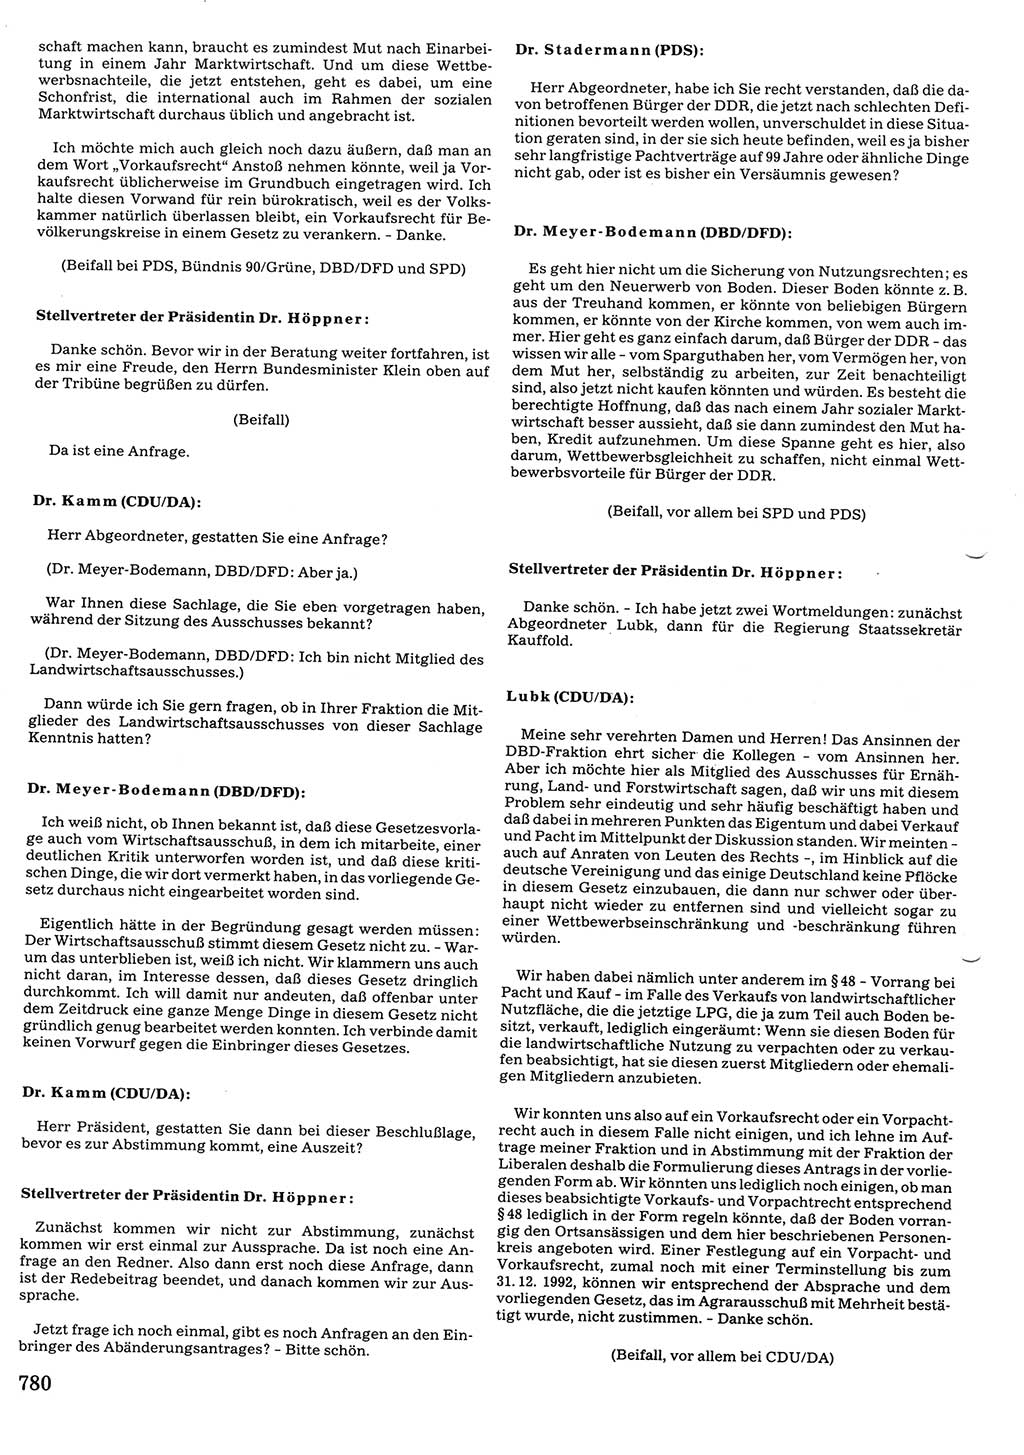 Tagungen der Volkskammer (VK) der Deutschen Demokratischen Republik (DDR), 10. Wahlperiode 1990, Seite 780 (VK. DDR 10. WP. 1990, Prot. Tg. 1-38, 5.4.-2.10.1990, S. 780)